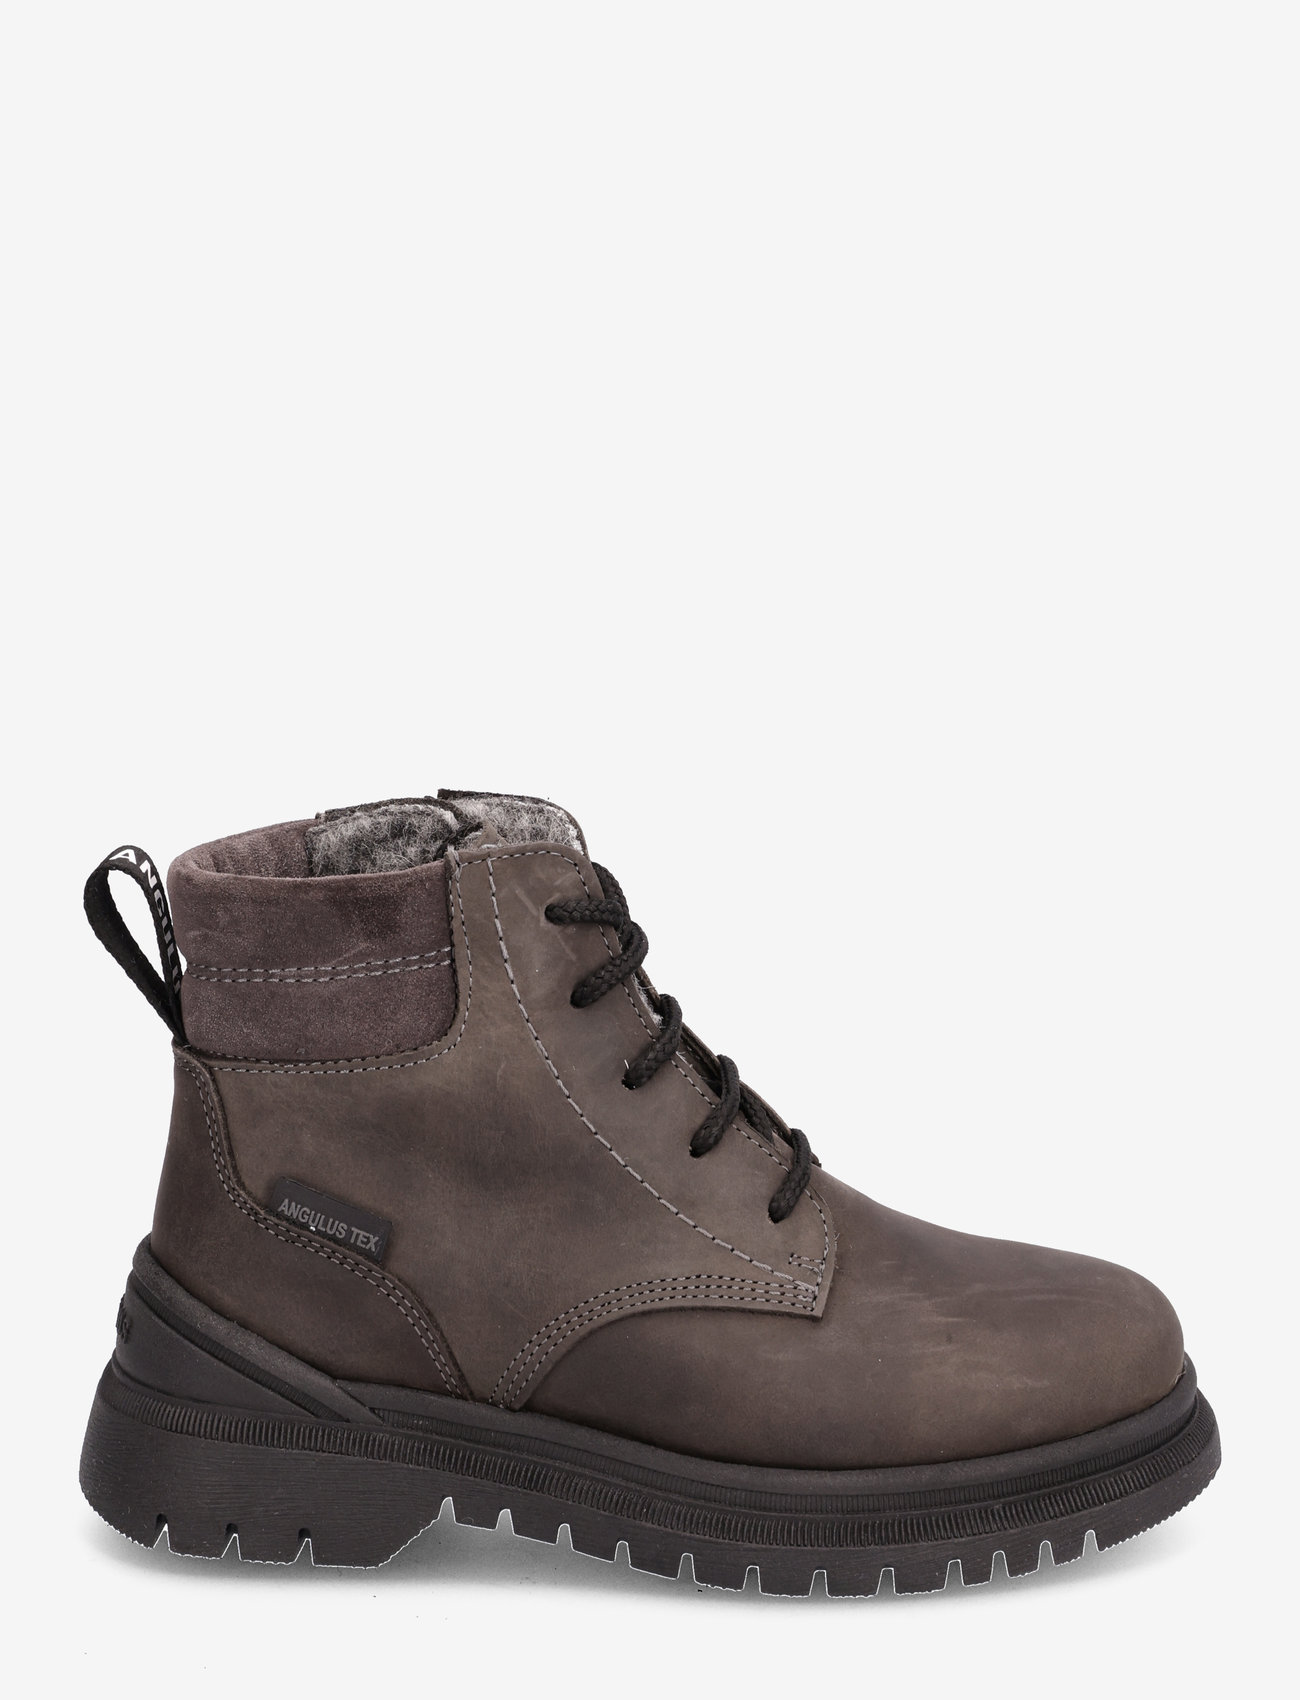 ANGULUS - Boots - flat - with lace and zip - lapset - 1762/1772 asphalt/asphalt - 1